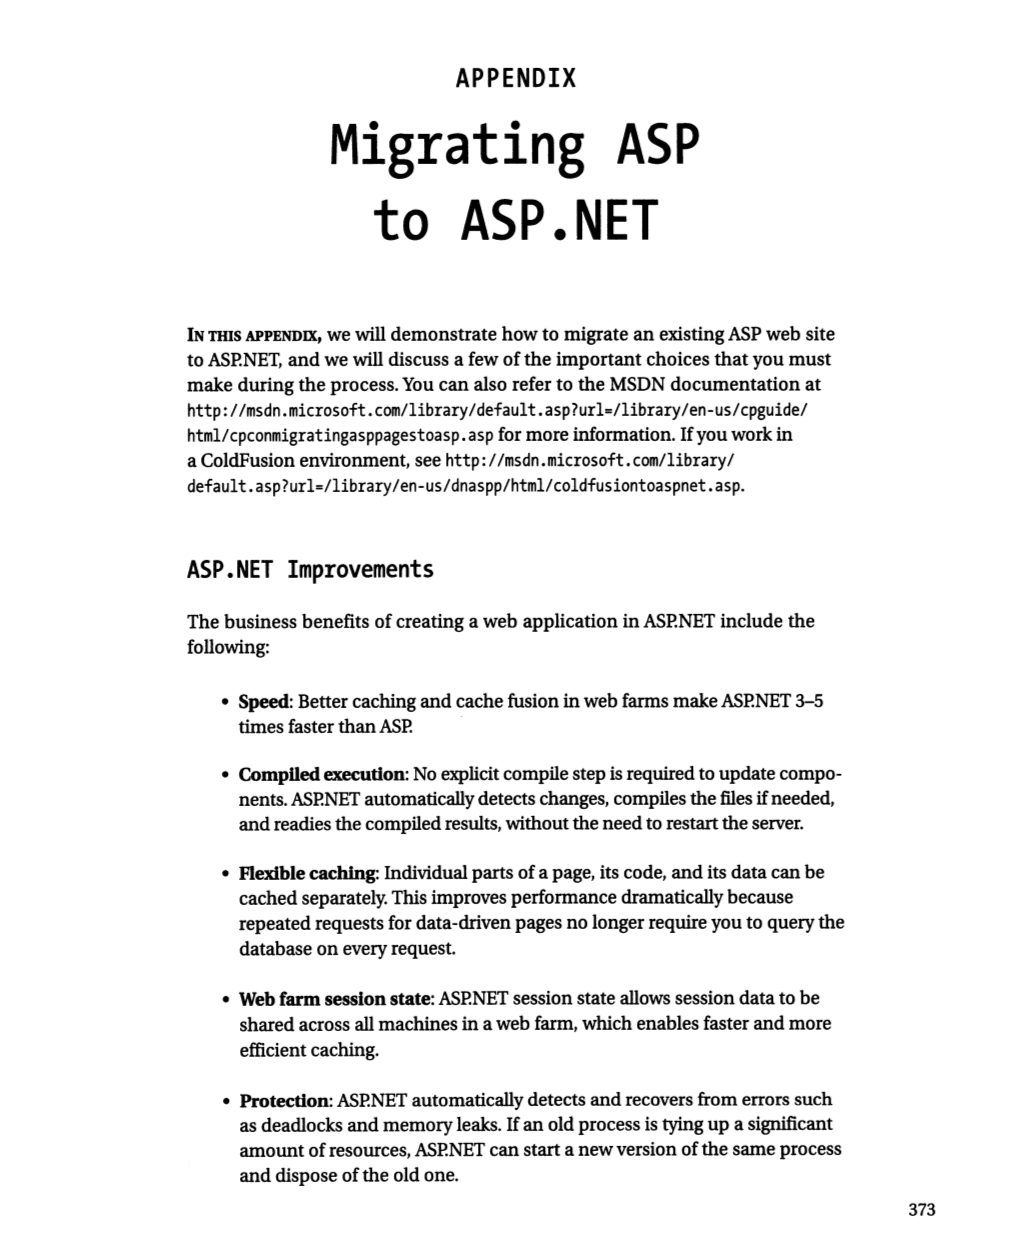 Migrating ASP to ASP.NET